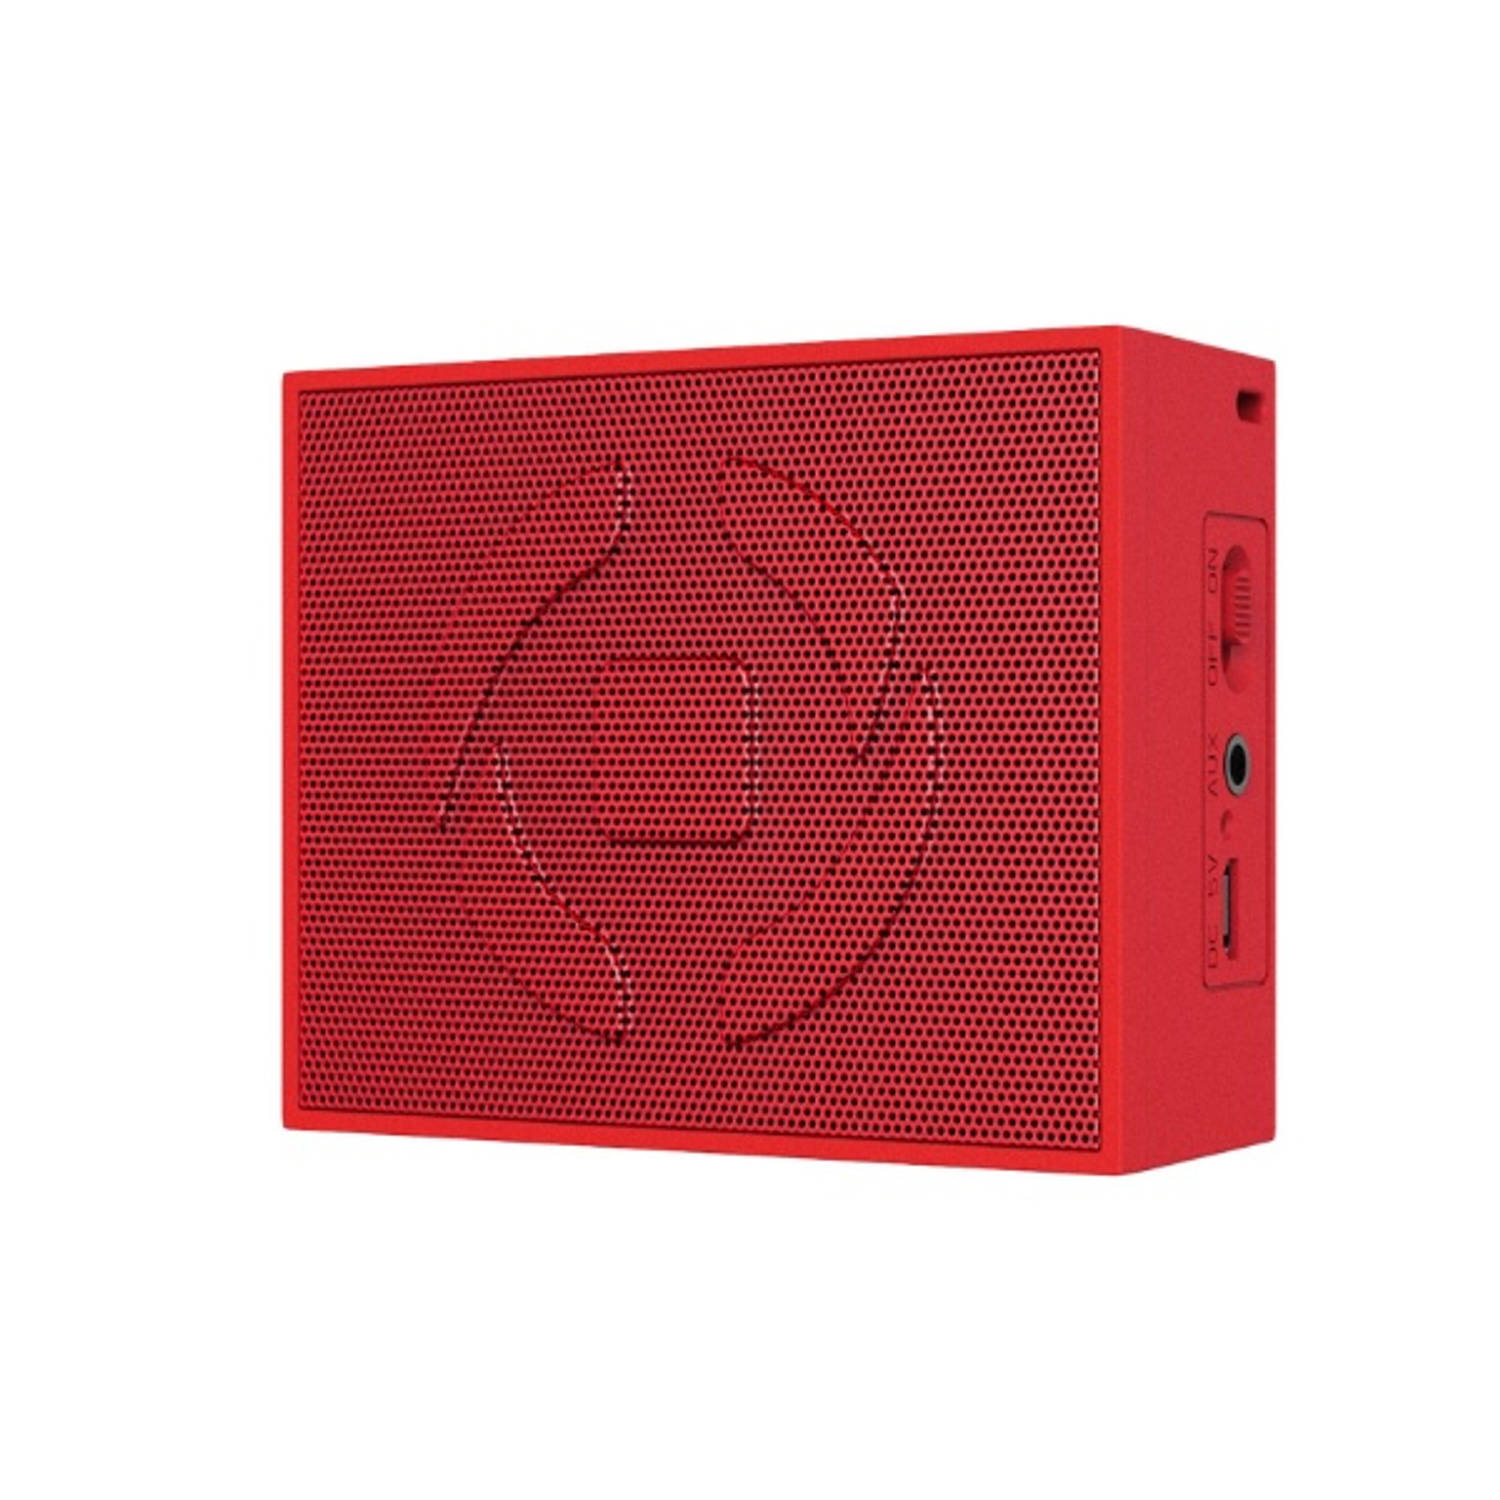 Celly speaker Upmini 6,7 x 8,2 cm rood